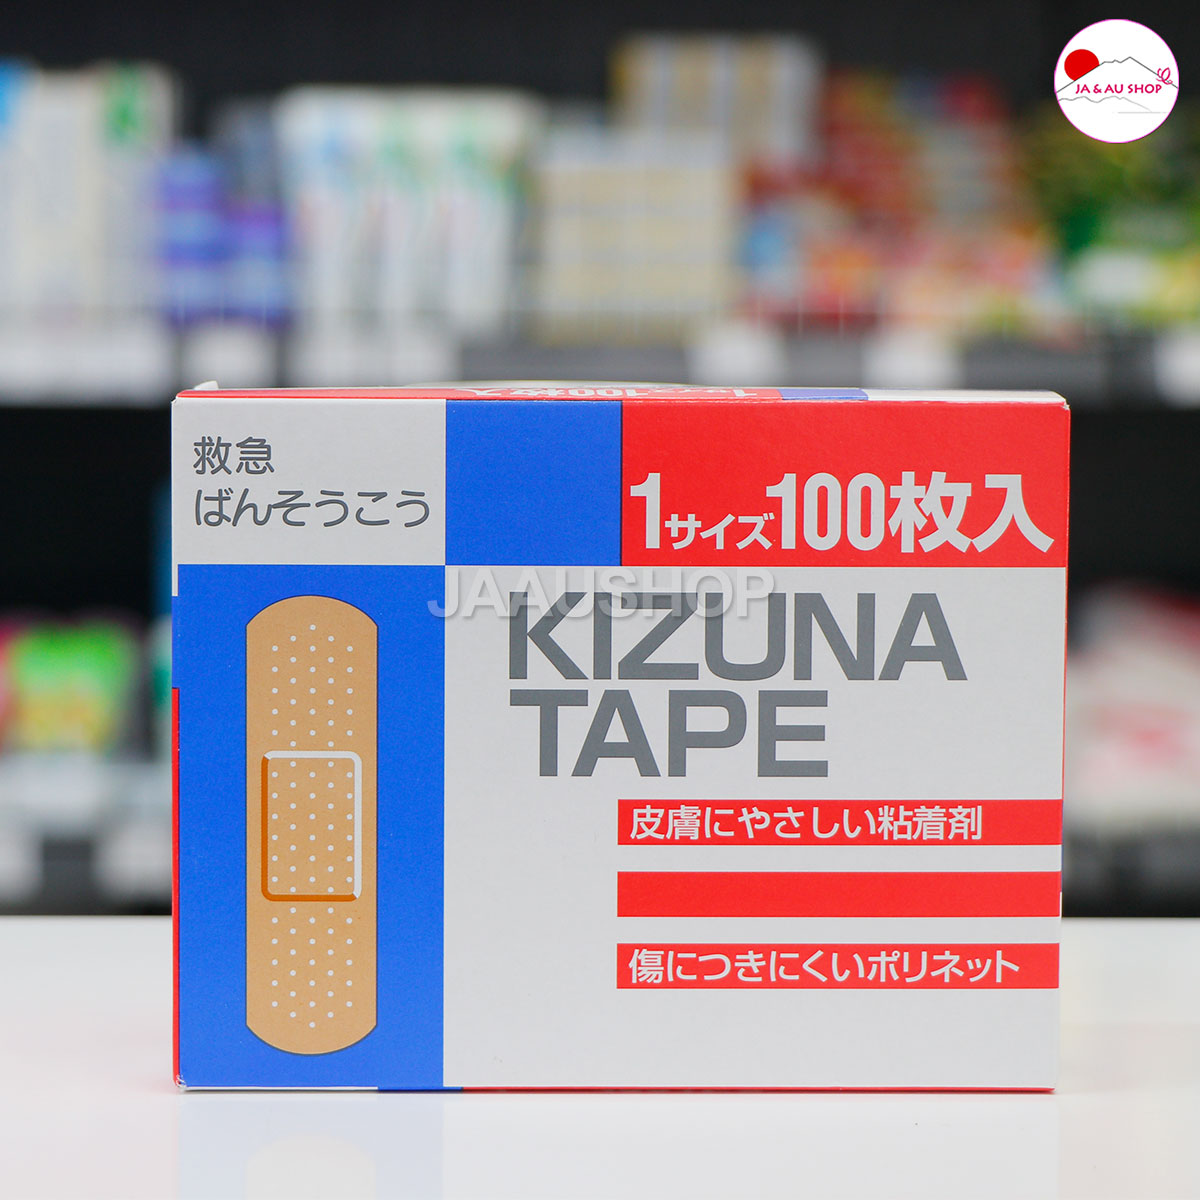 Giới thiệu sản phẩm Băng cá nhân Urgo Kizuna Tape 100 chiếc